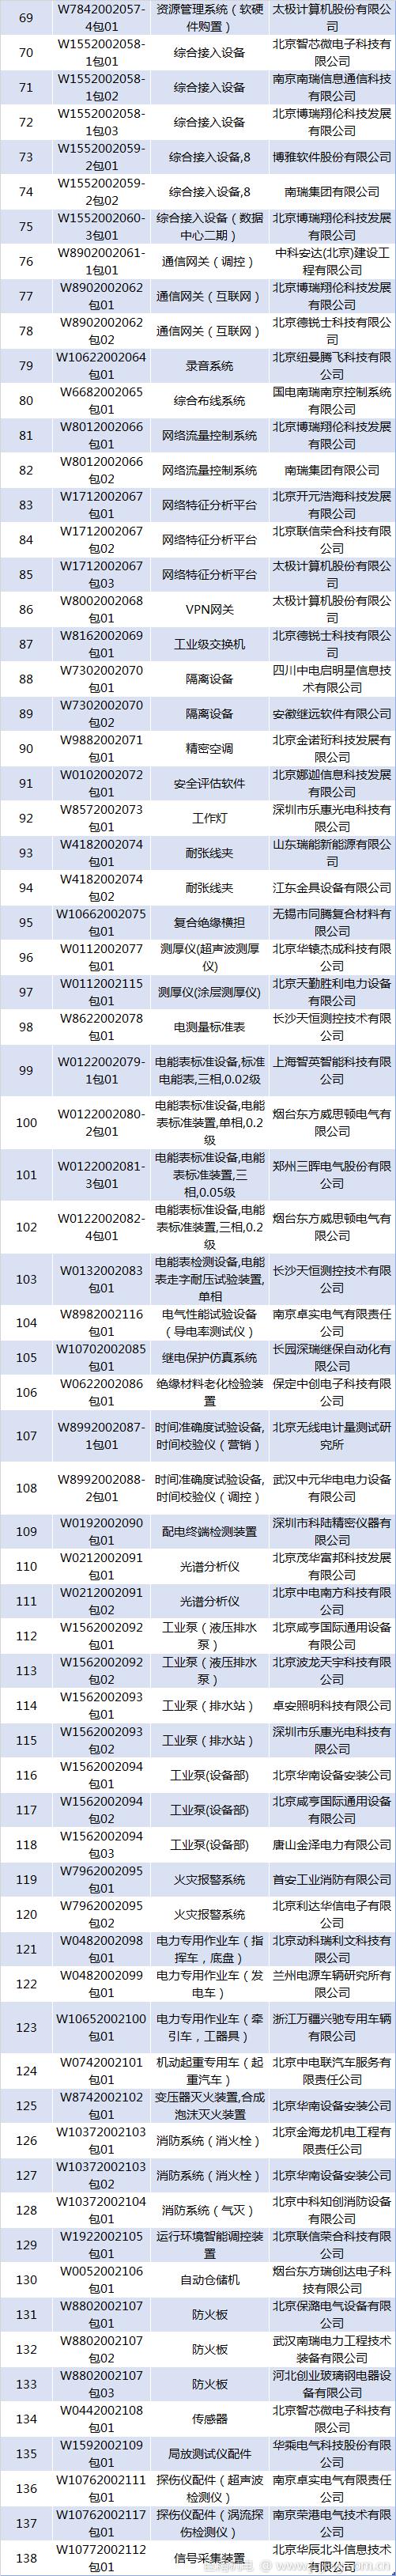 国网北京2020年第二批物资招标采购中标候选人